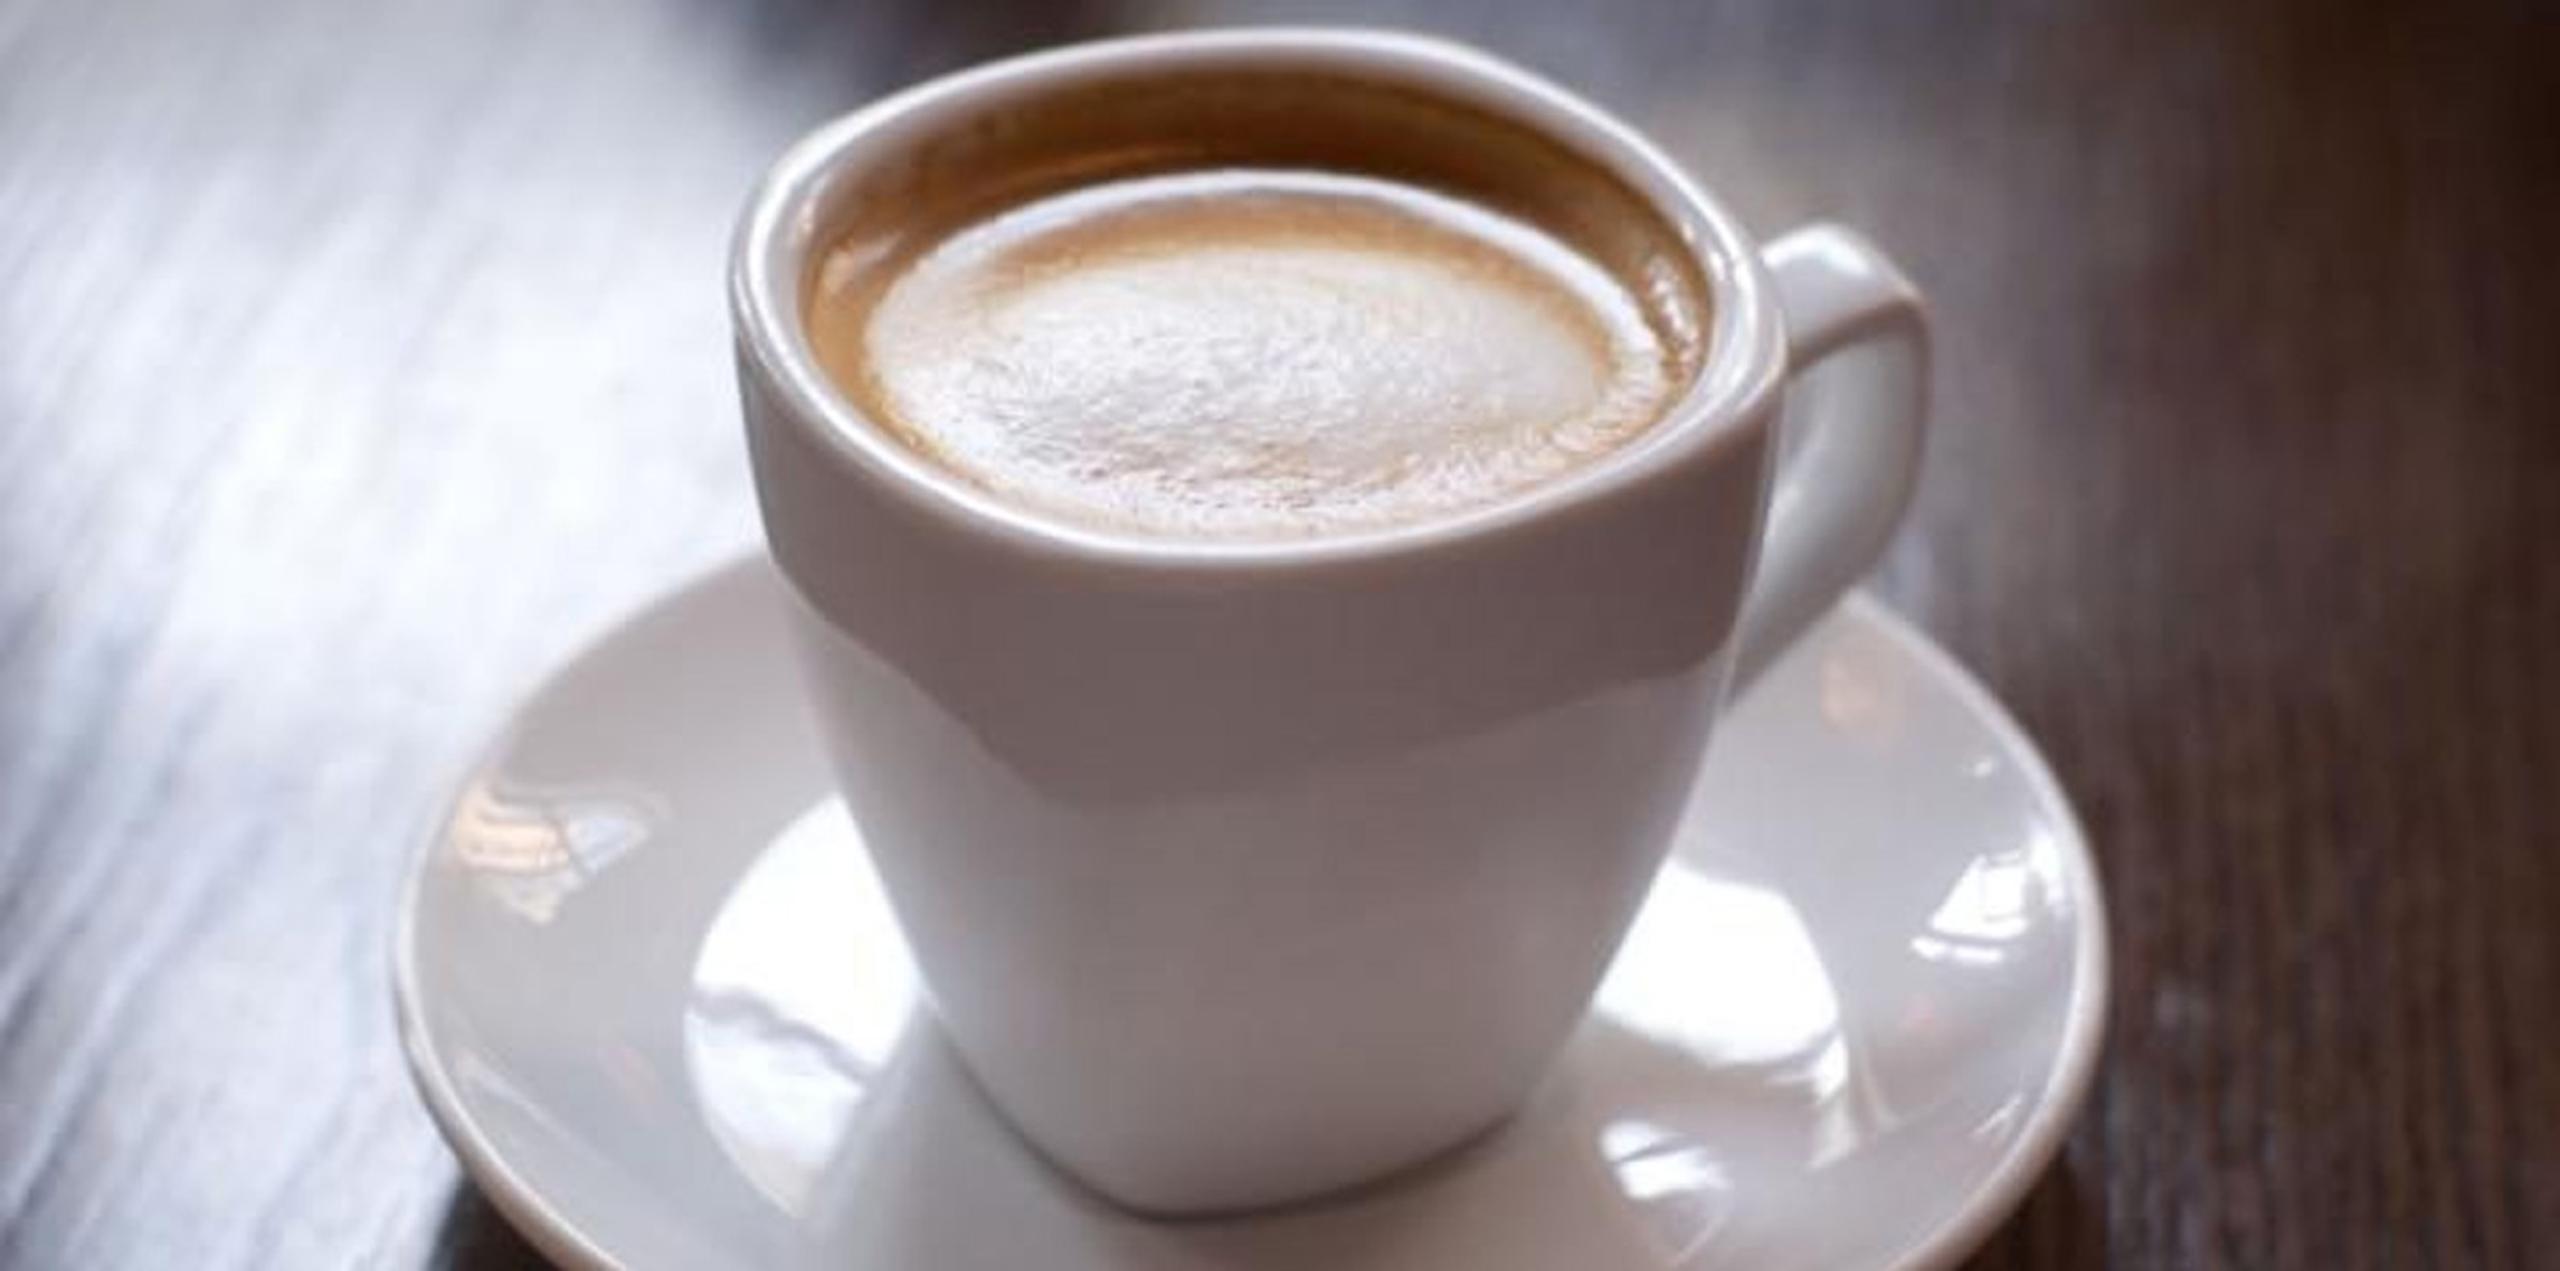 El estudio se centró en el genoma de italianos y neerlandeses, a los que tras las pruebas genéticas se les preguntó cuánto café consumían diariamente.